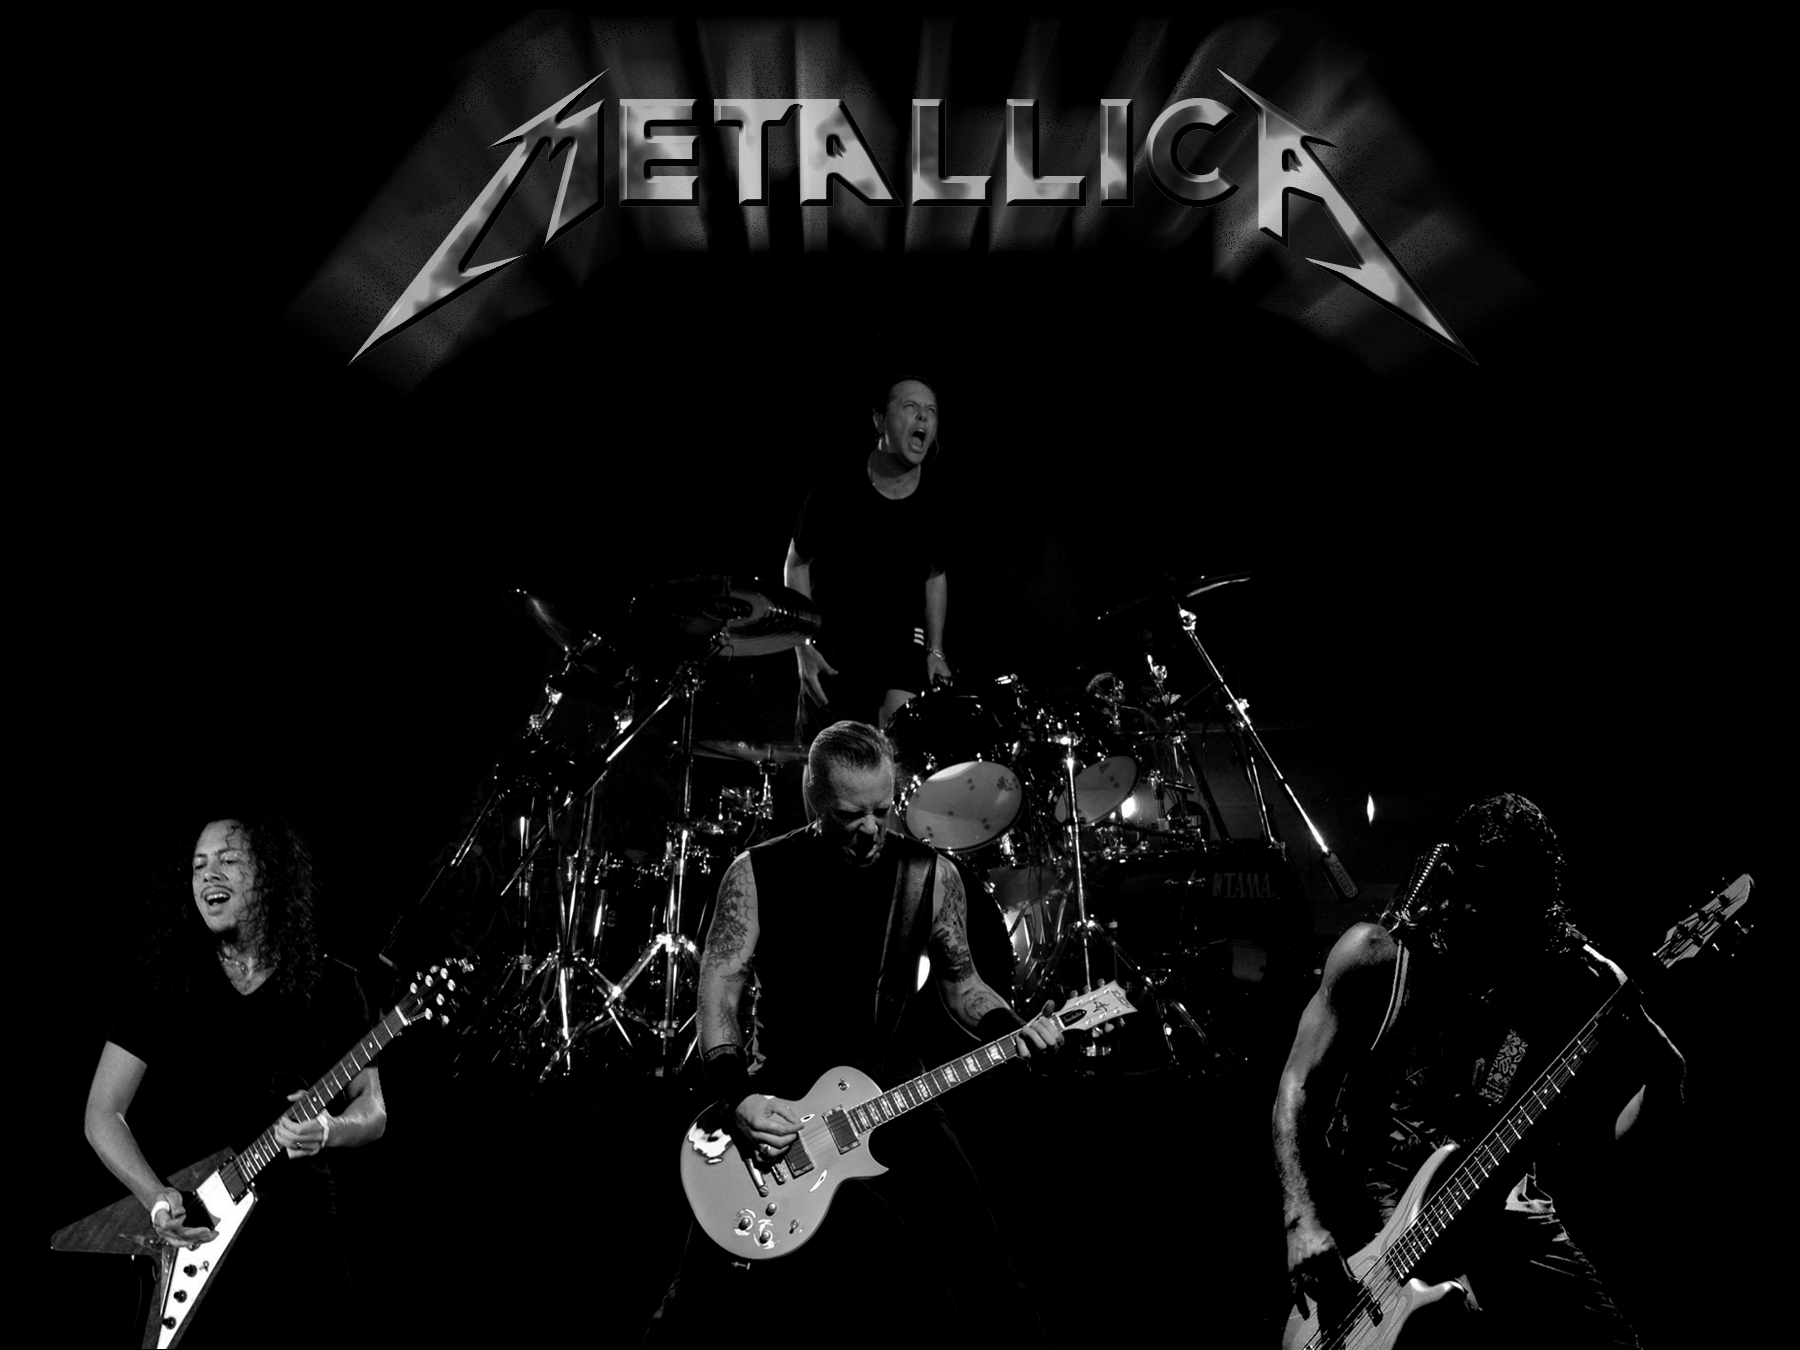 Metallica Puter Wallpaper Desktop Background